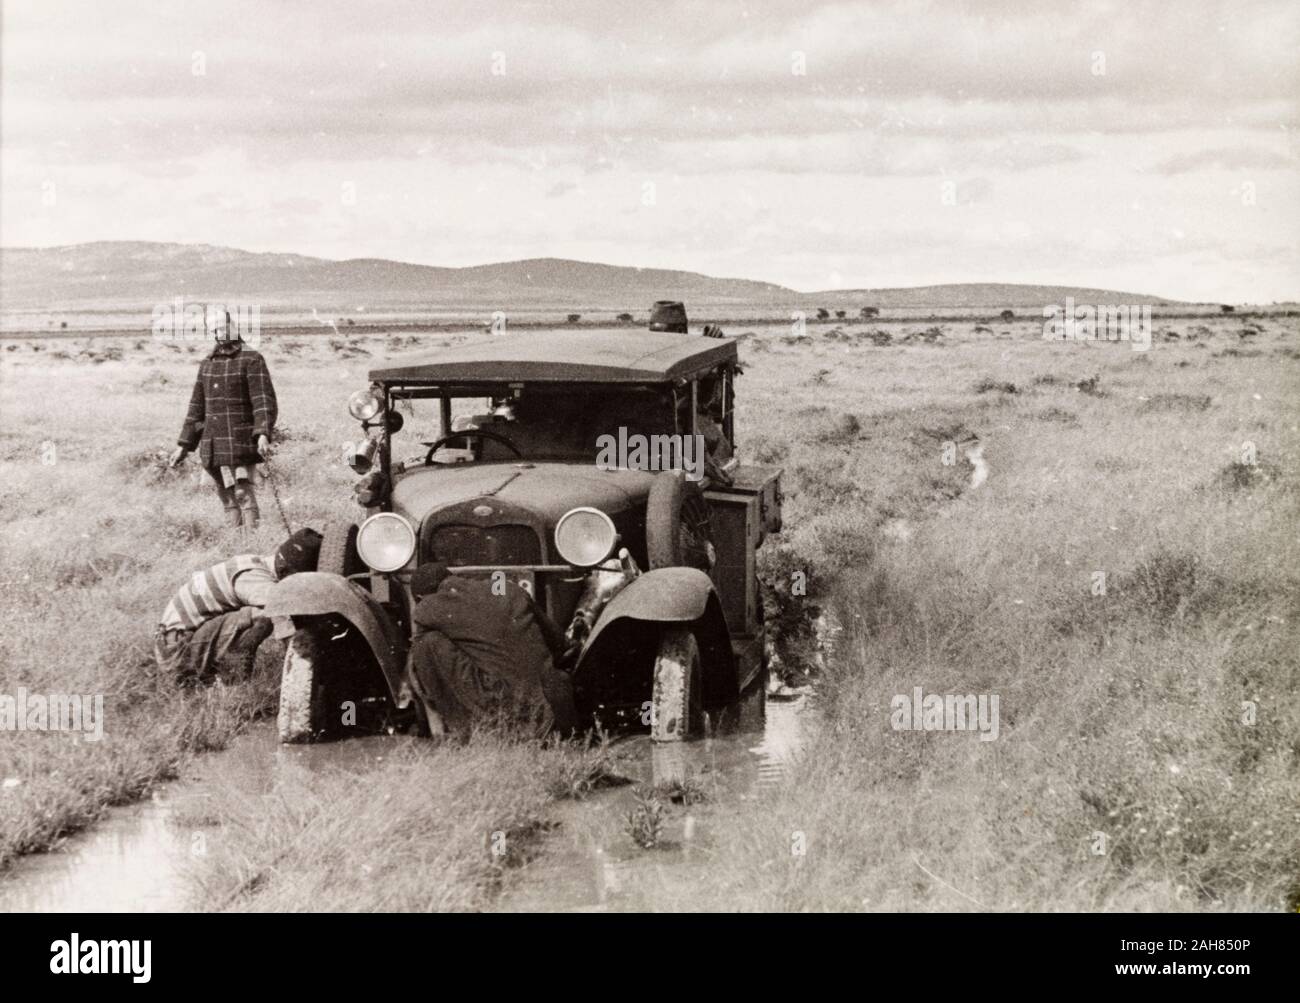 TanzaniaTanganyika, mehrere Männer kümmern sich um ein Auto, das im Schlamm auf einer überfluteten Land Anschluss stecken geblieben ist. Dieses Foto wird geglaubt, auf eine der Safaris, die EH mit der lindstrom Familie nahm genommen worden zu sein, wahrscheinlich die Serengeti Safari im Jahr 1936, in dem Sie mit schlechtem Wetter und Überschwemmungen heimgesucht wurden. Originalmanuskript Bildunterschrift: Autofahren in der Regenzeit im Norden Tanganyika. Fisch auf der linken 1933/34, 1933-1934. 1995/076/1/2/6/27. Stockfoto